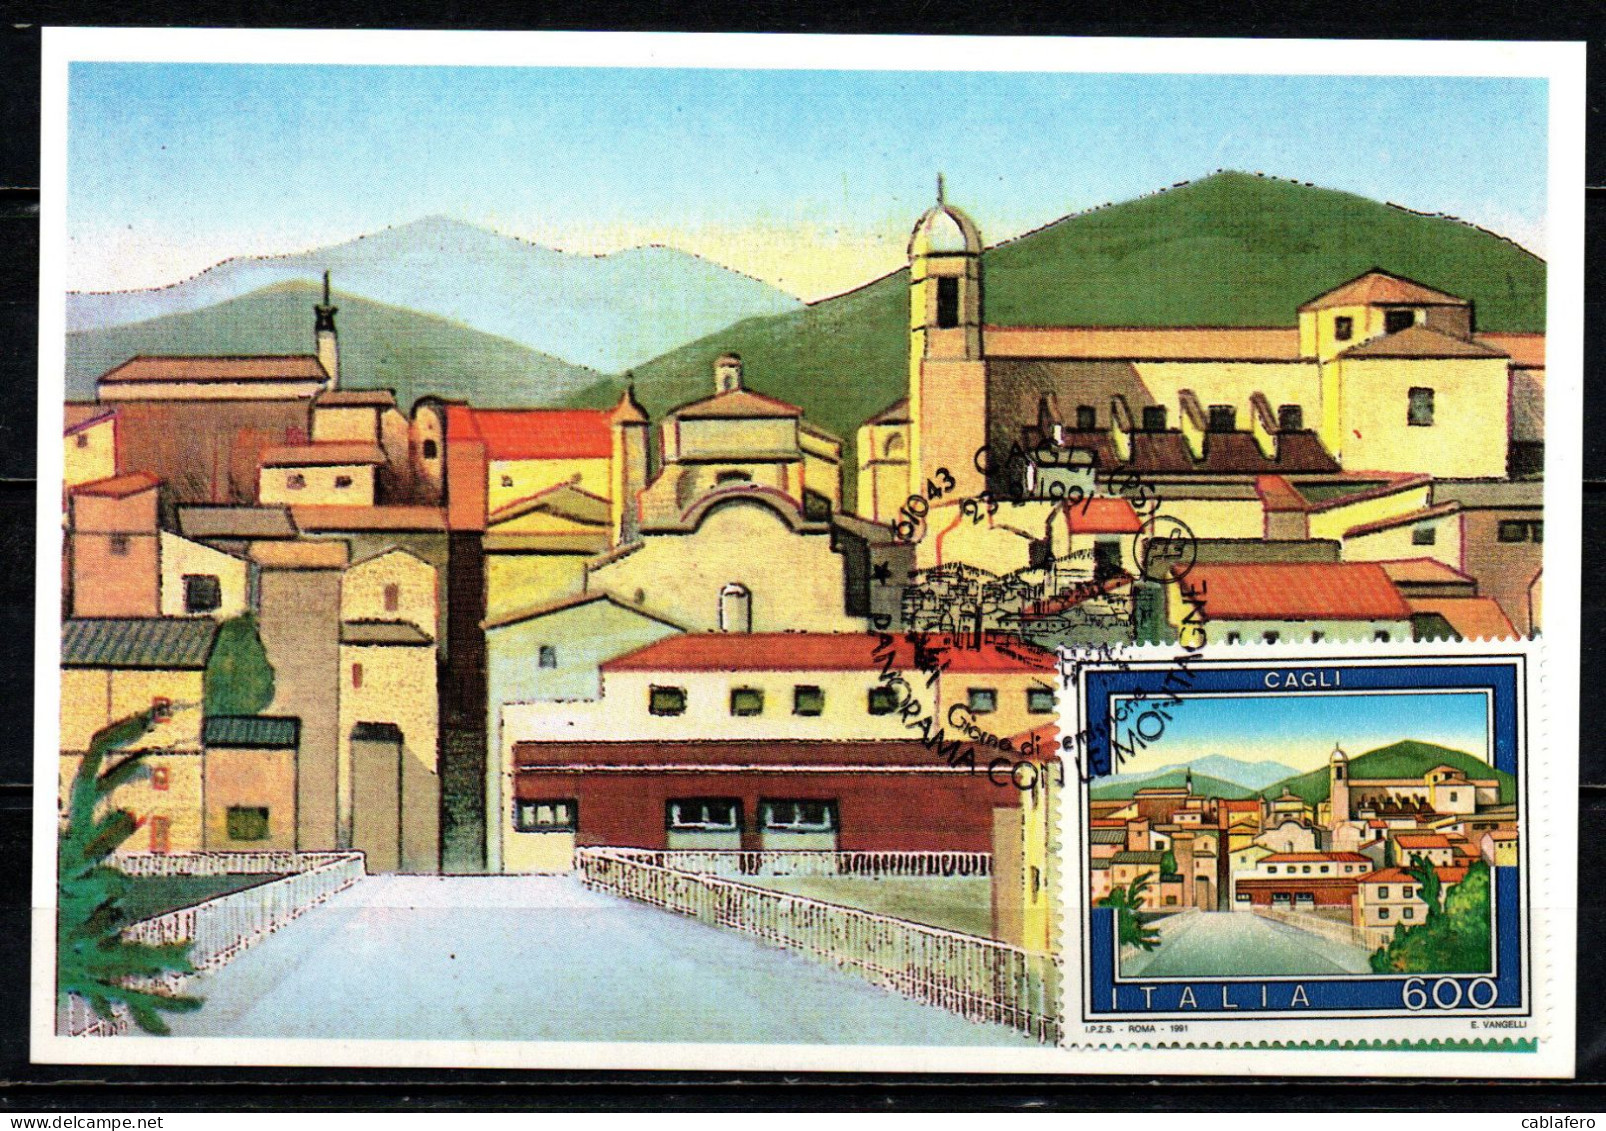 ITALIA - 1991 - IL TURISMO IN ITALIA: CAGLI - Maximumkarten (MC)